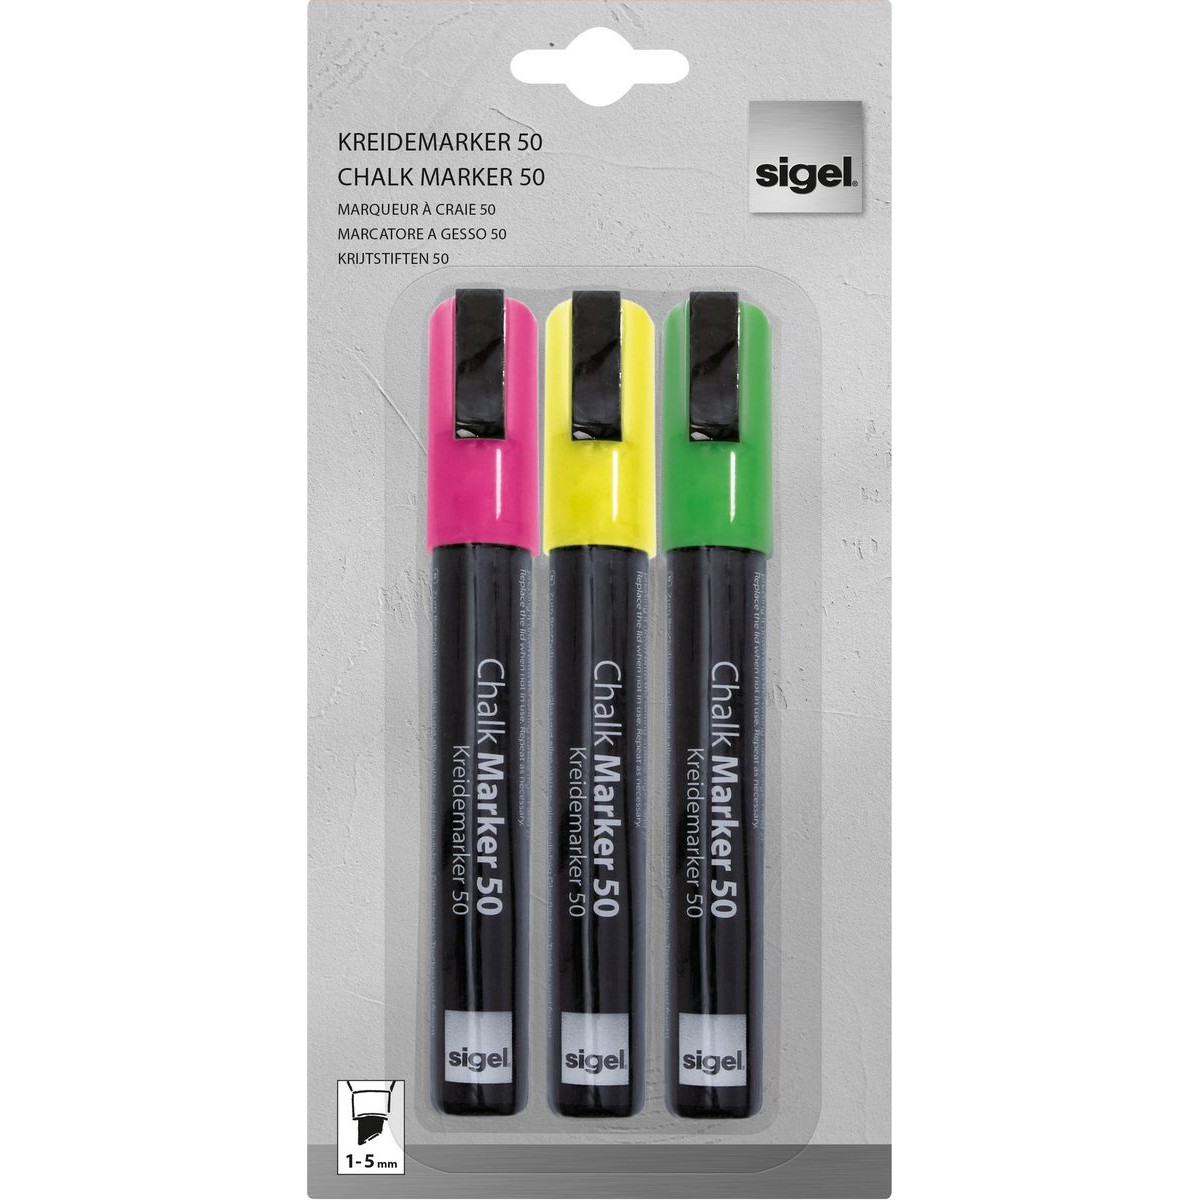 GL182 - Sigel - Chalk Marker 50, chisel tip 1-5 mm - Multicolor